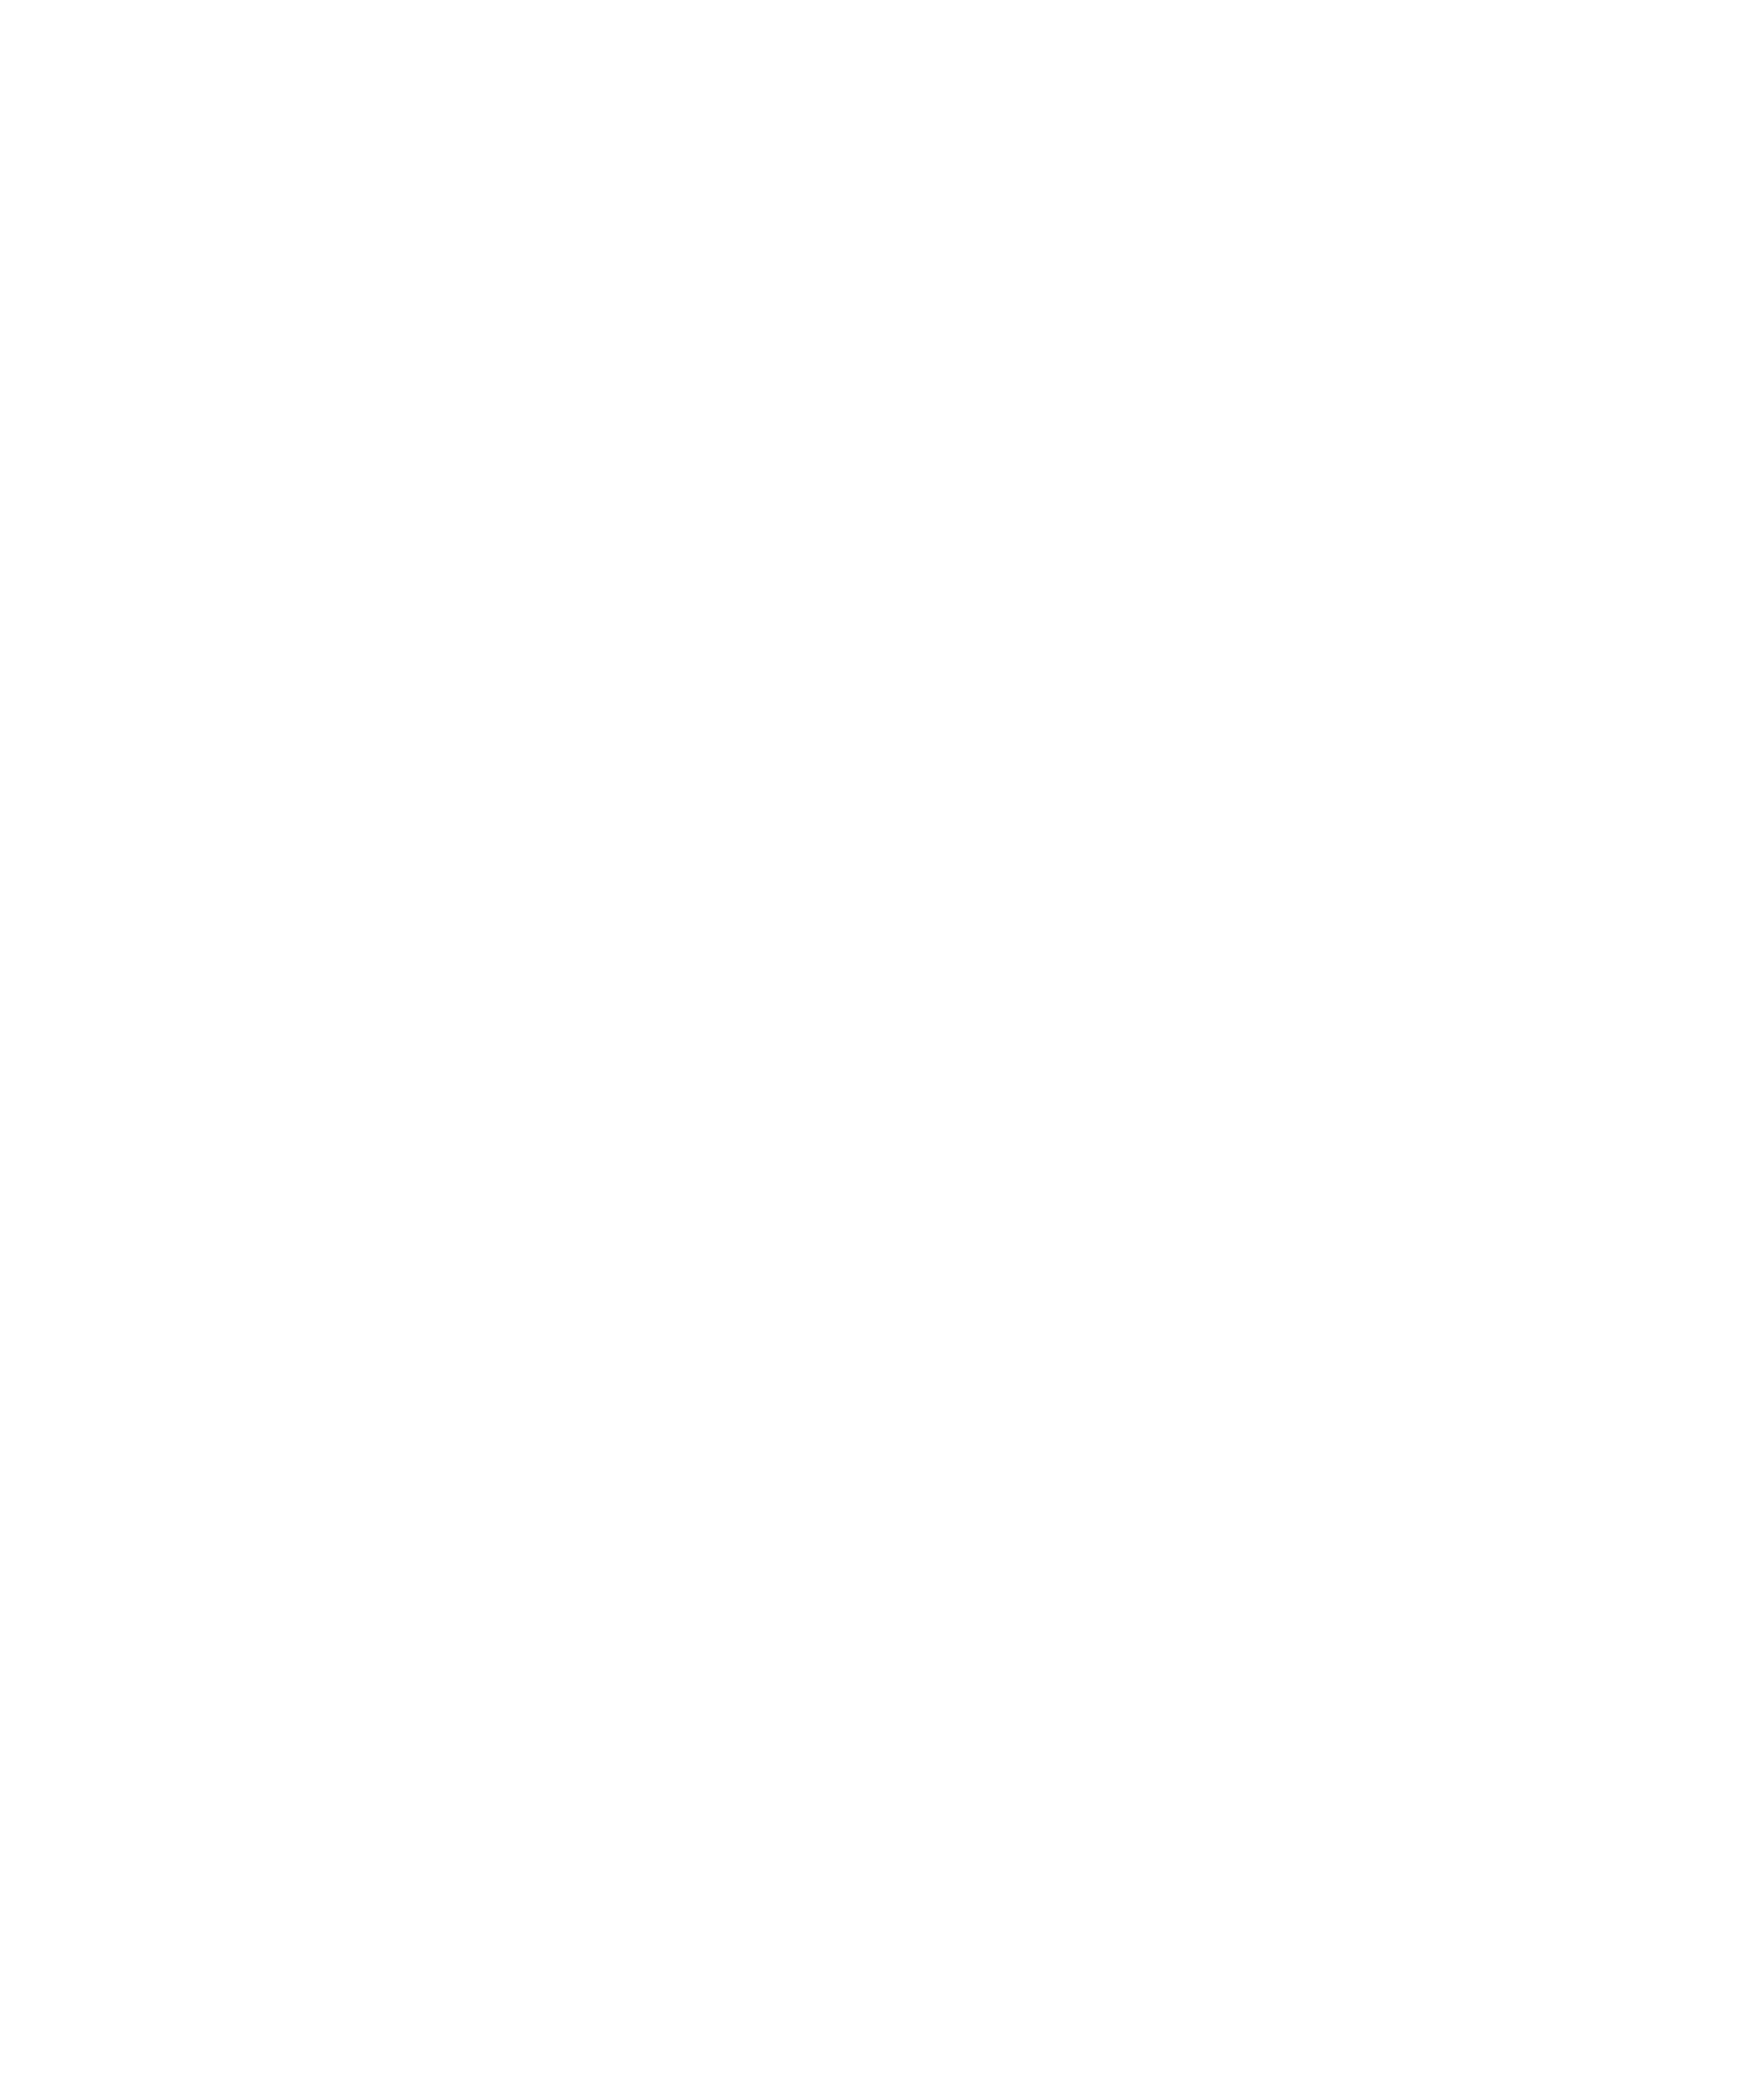 Prix du choix des voyageurs 2021